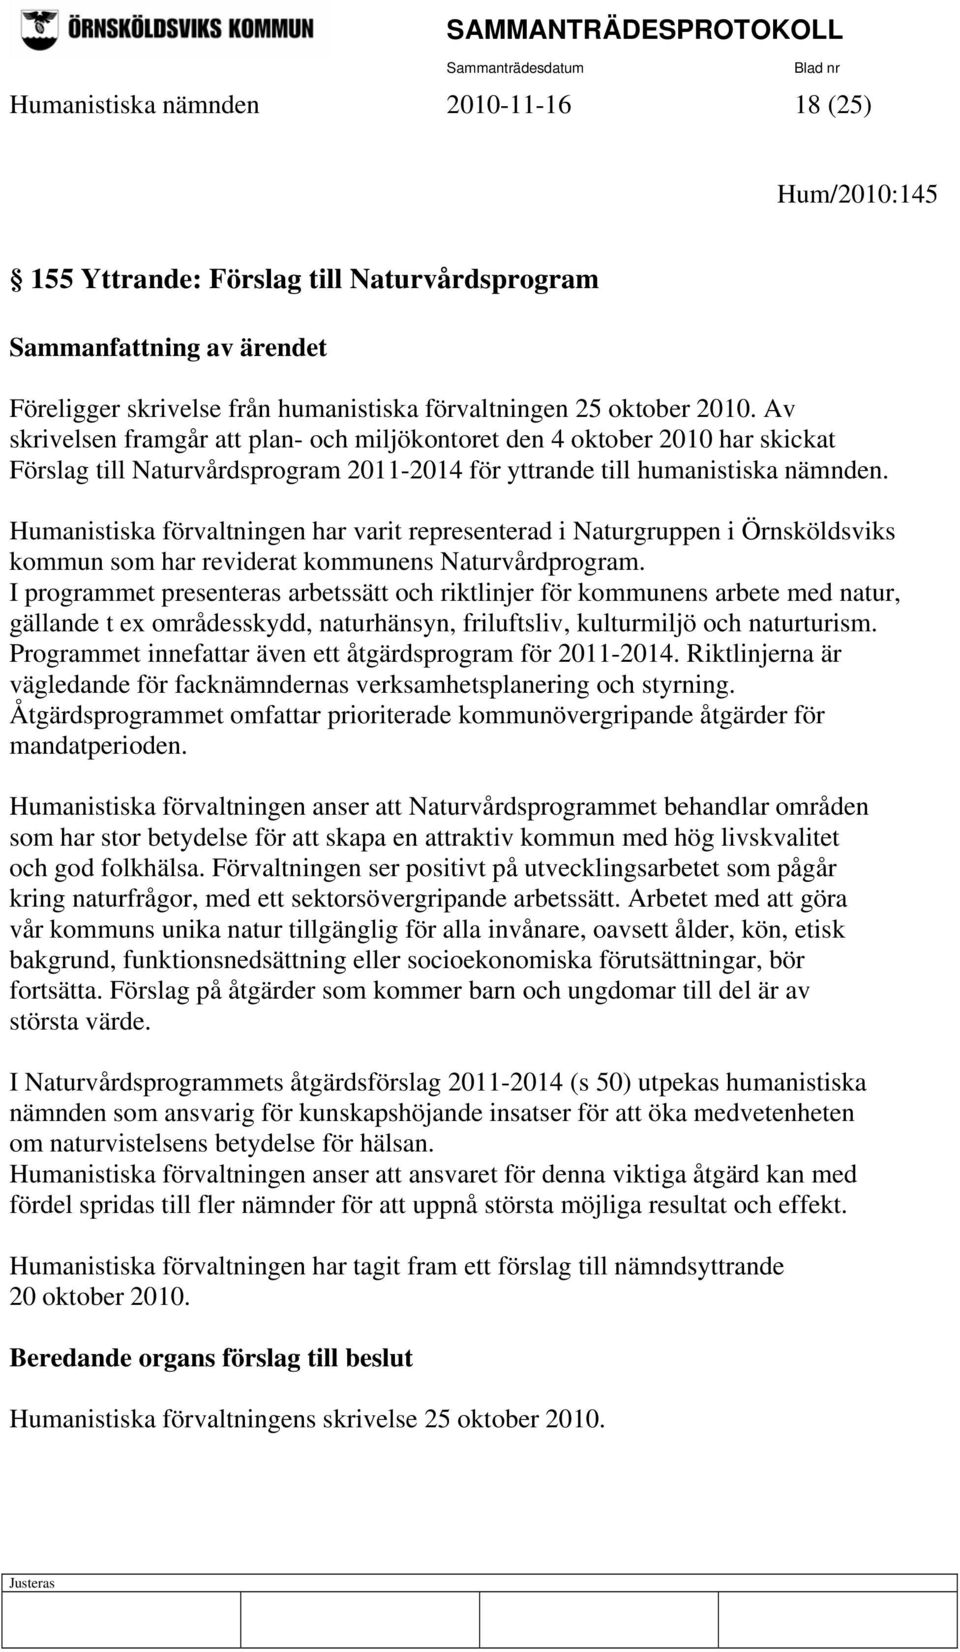 Humanistiska förvaltningen har varit representerad i Naturgruppen i Örnsköldsviks kommun som har reviderat kommunens Naturvårdprogram.